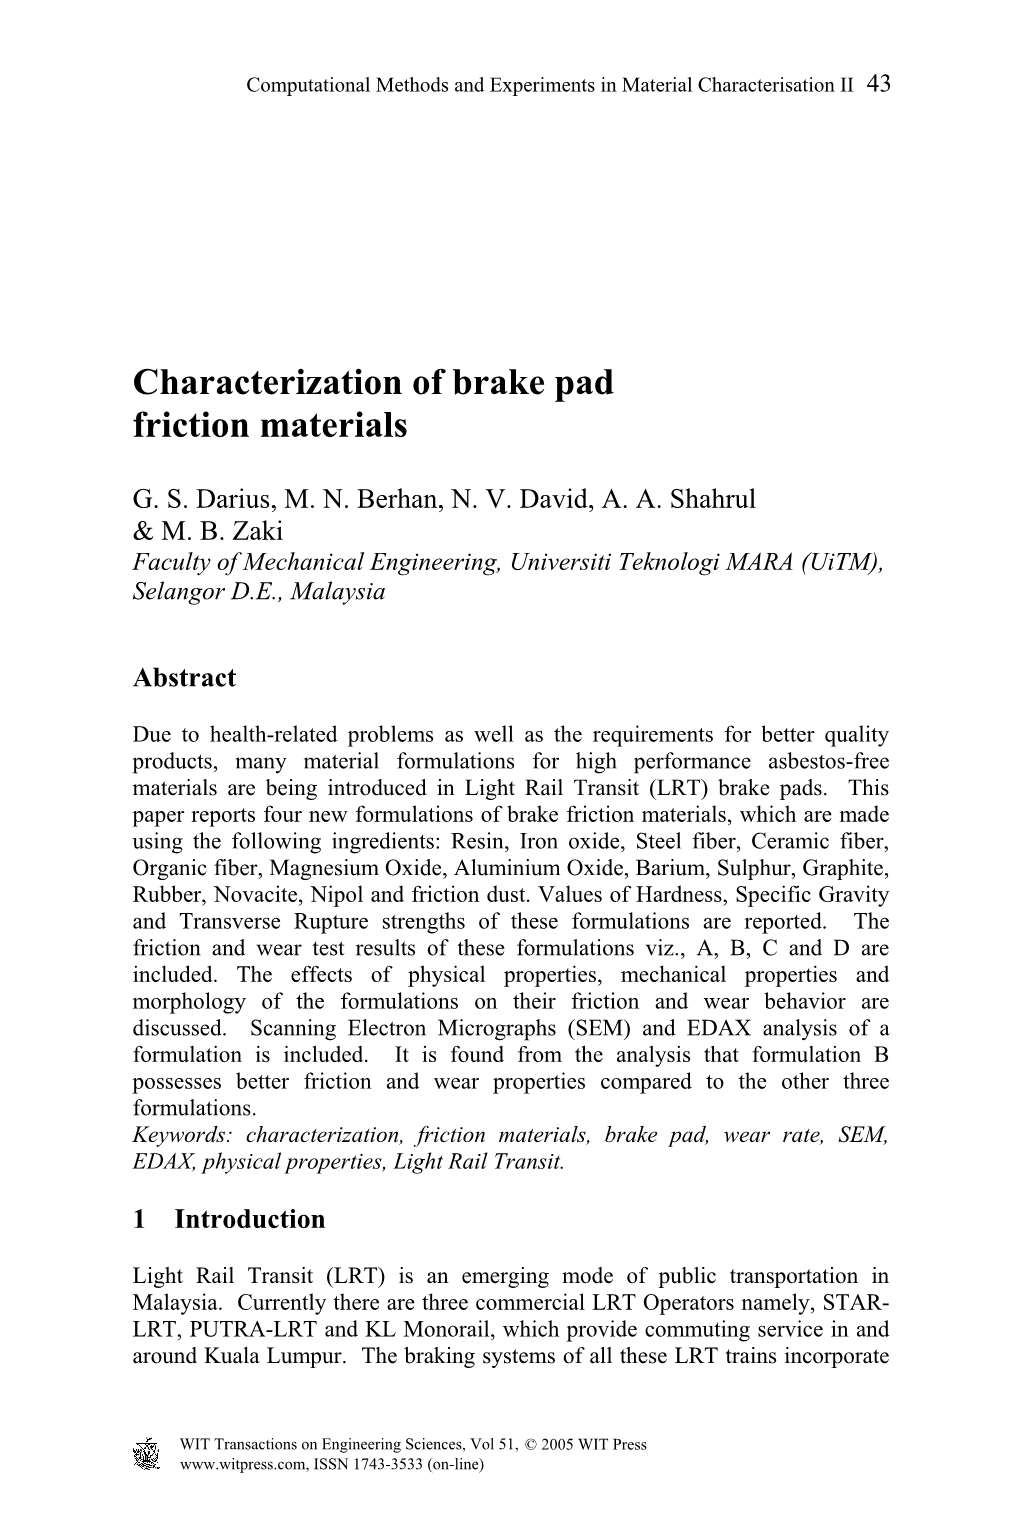 Characterization of Brake Pad Friction Materials